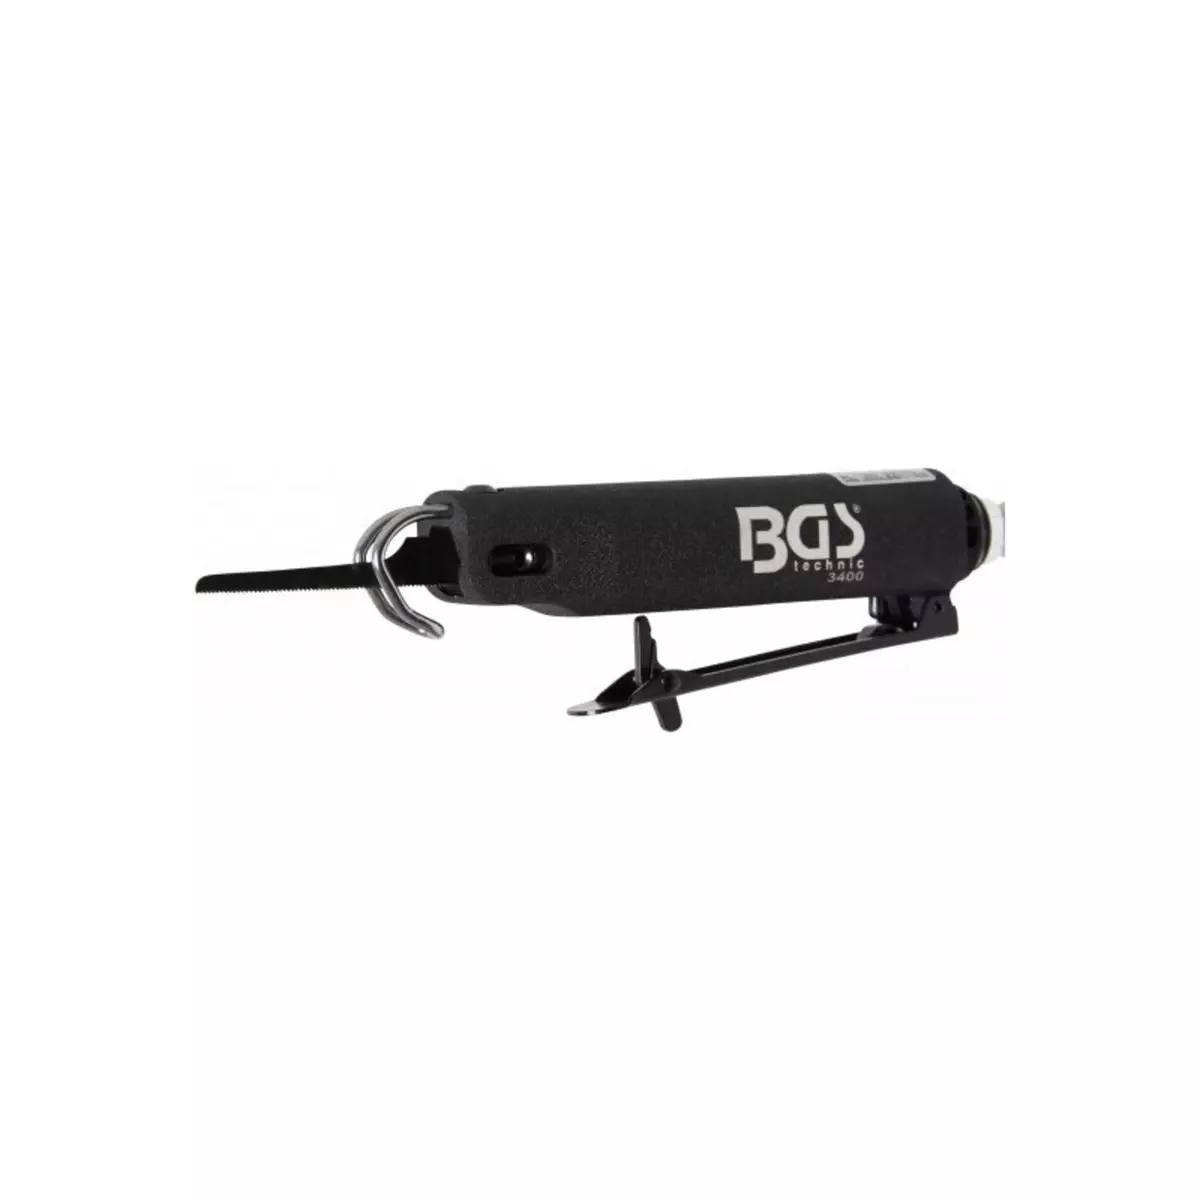  Mini scie pneumatique BGS - 3400